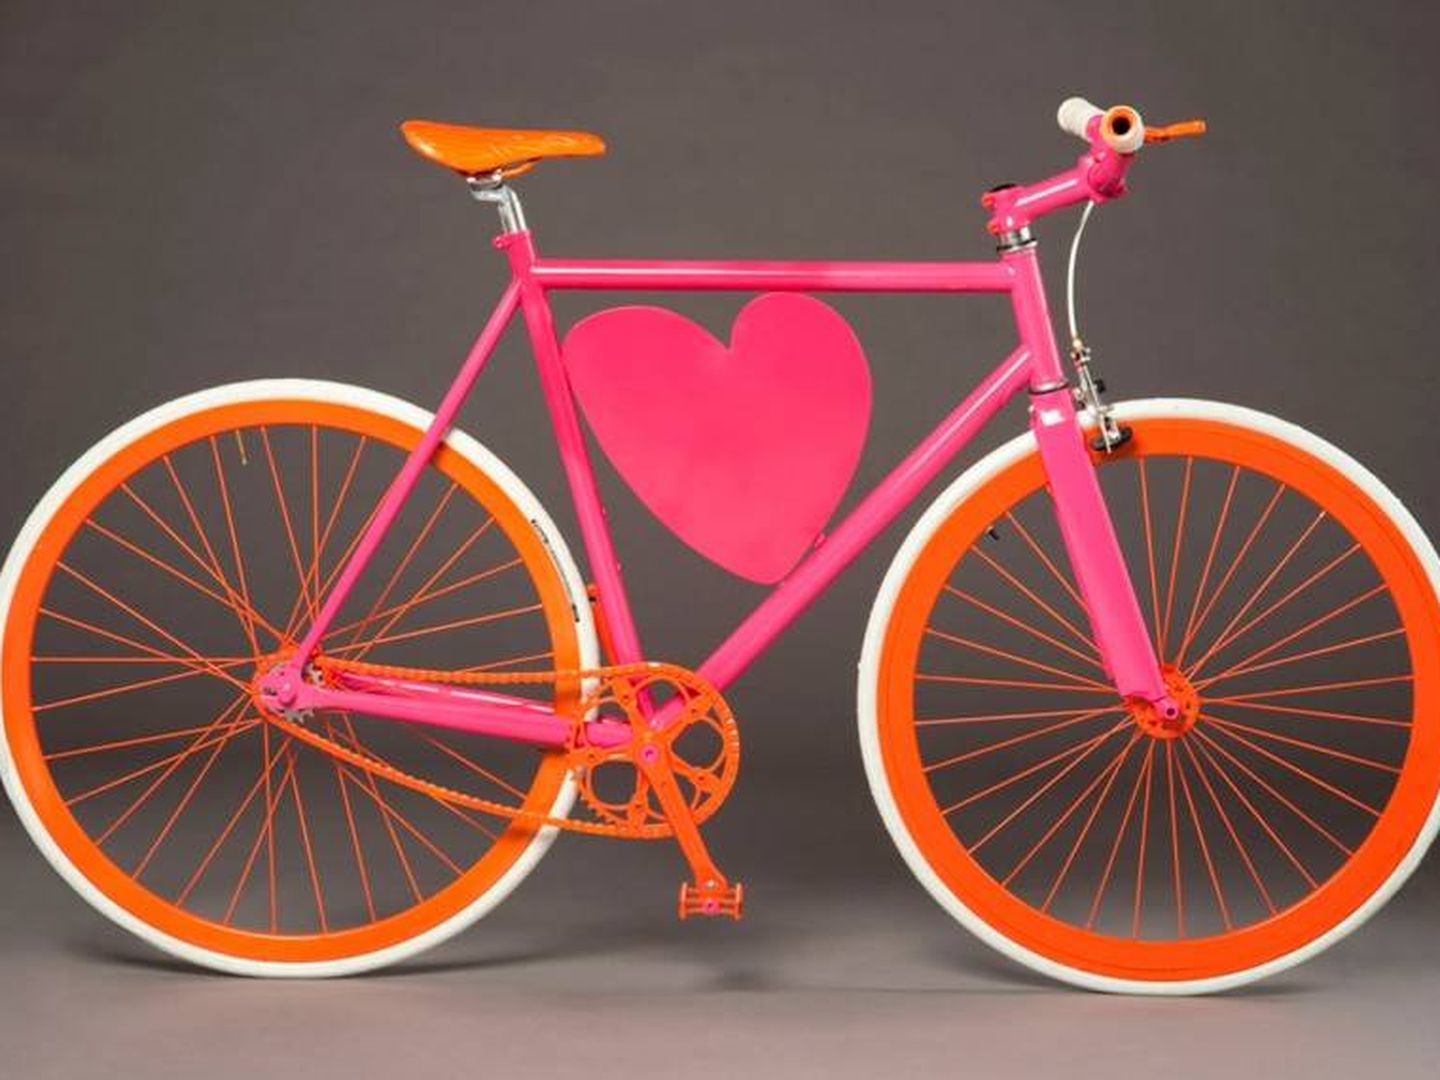 Bicicleta diseñada por Ágatha Ruiz de la Prada